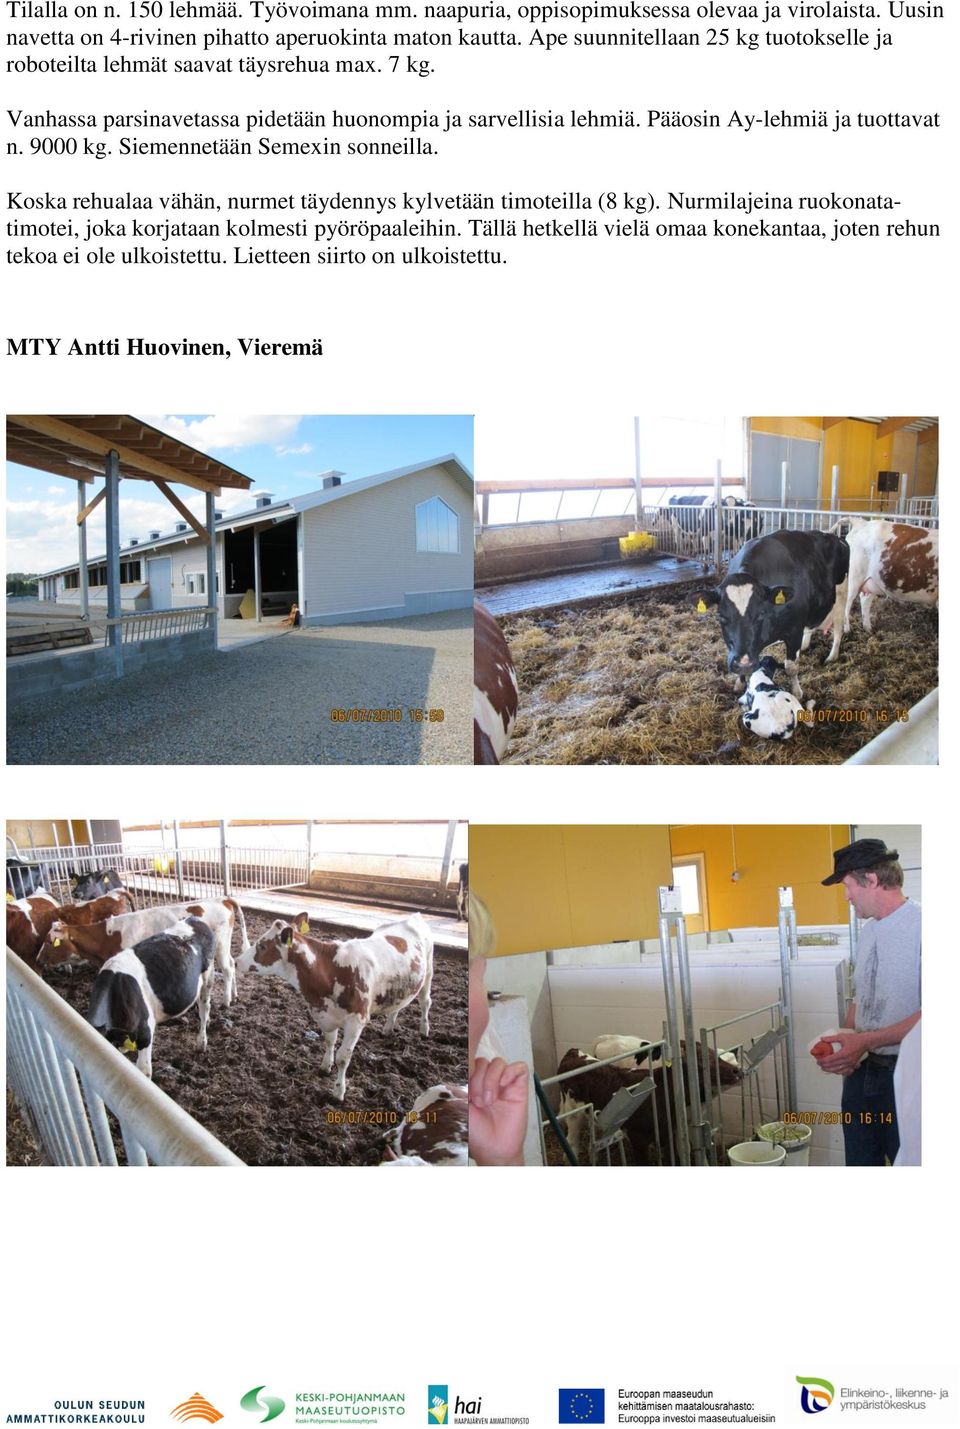 Pääosin Ay-lehmiä ja tuottavat n. 9000 kg. Siemennetään Semexin sonneilla. Koska rehualaa vähän, nurmet täydennys kylvetään timoteilla (8 kg).